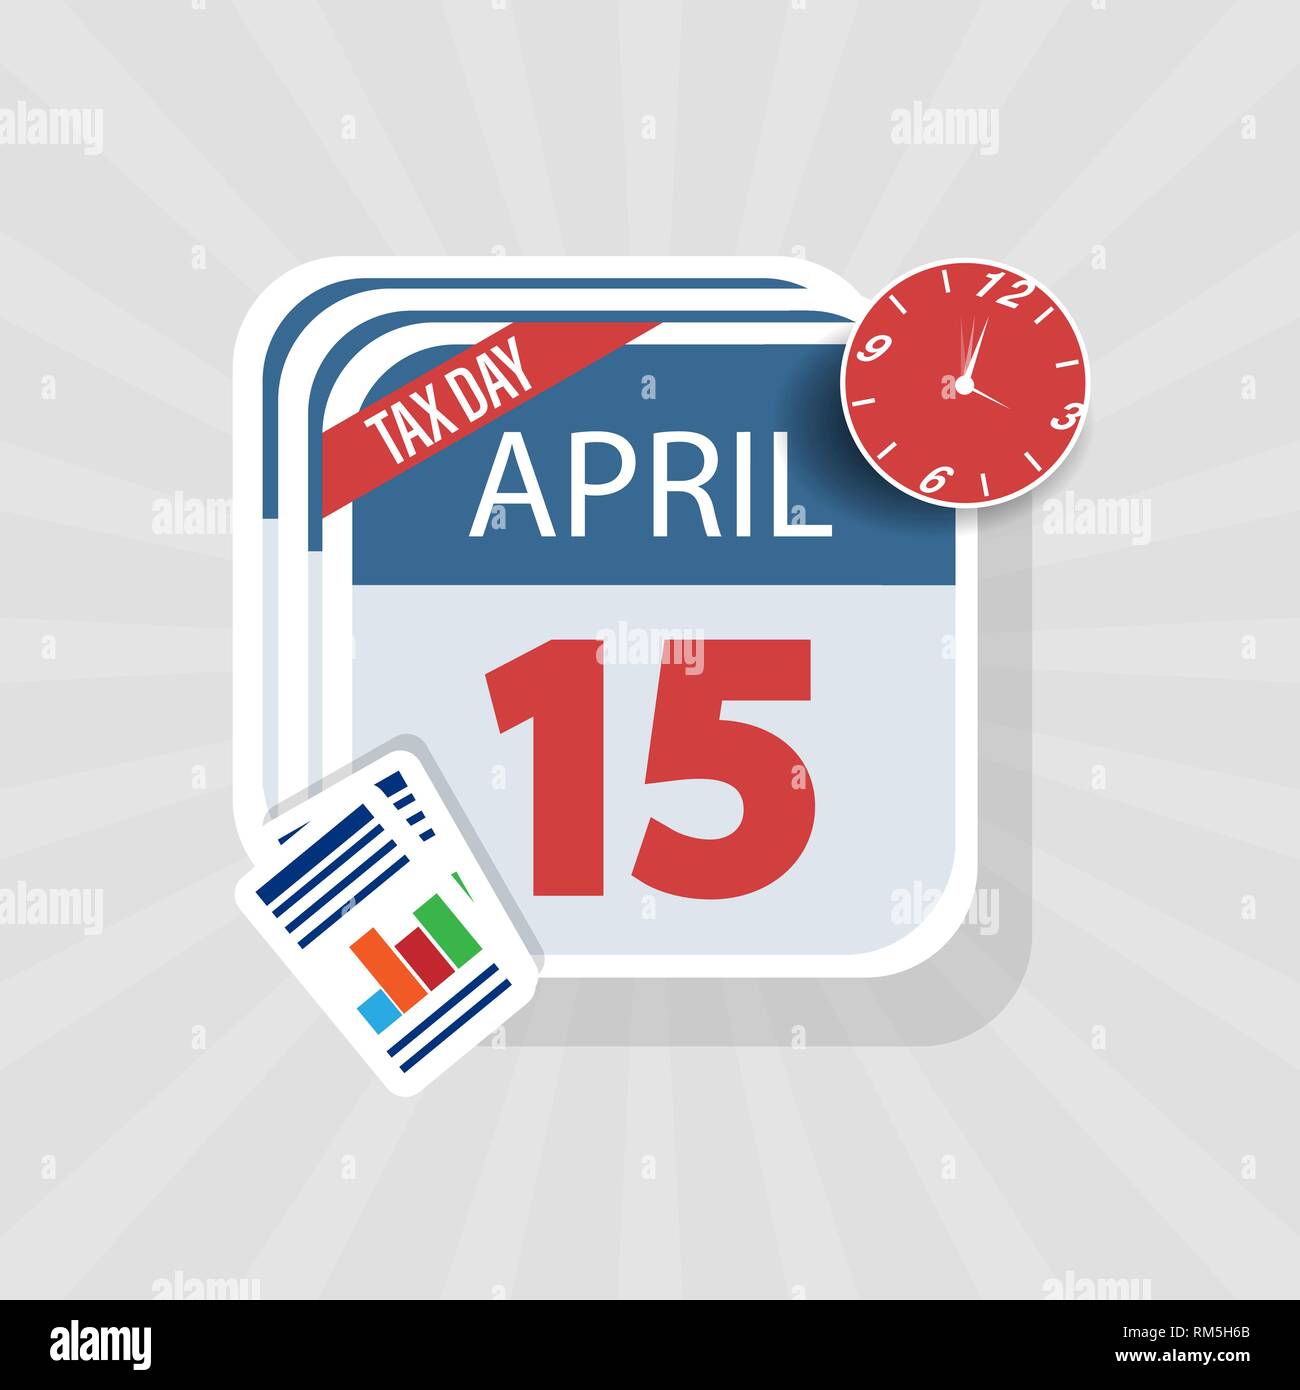 Icono de advertencia de EE.UU. El Día de los impuestos, el 15 de abril, el Impuesto Federal Sobre La Renta plazo recordatorio sobre una superficie plana de diseño de calendario. EPS10 ilustración vectorial. Ilustración del Vector